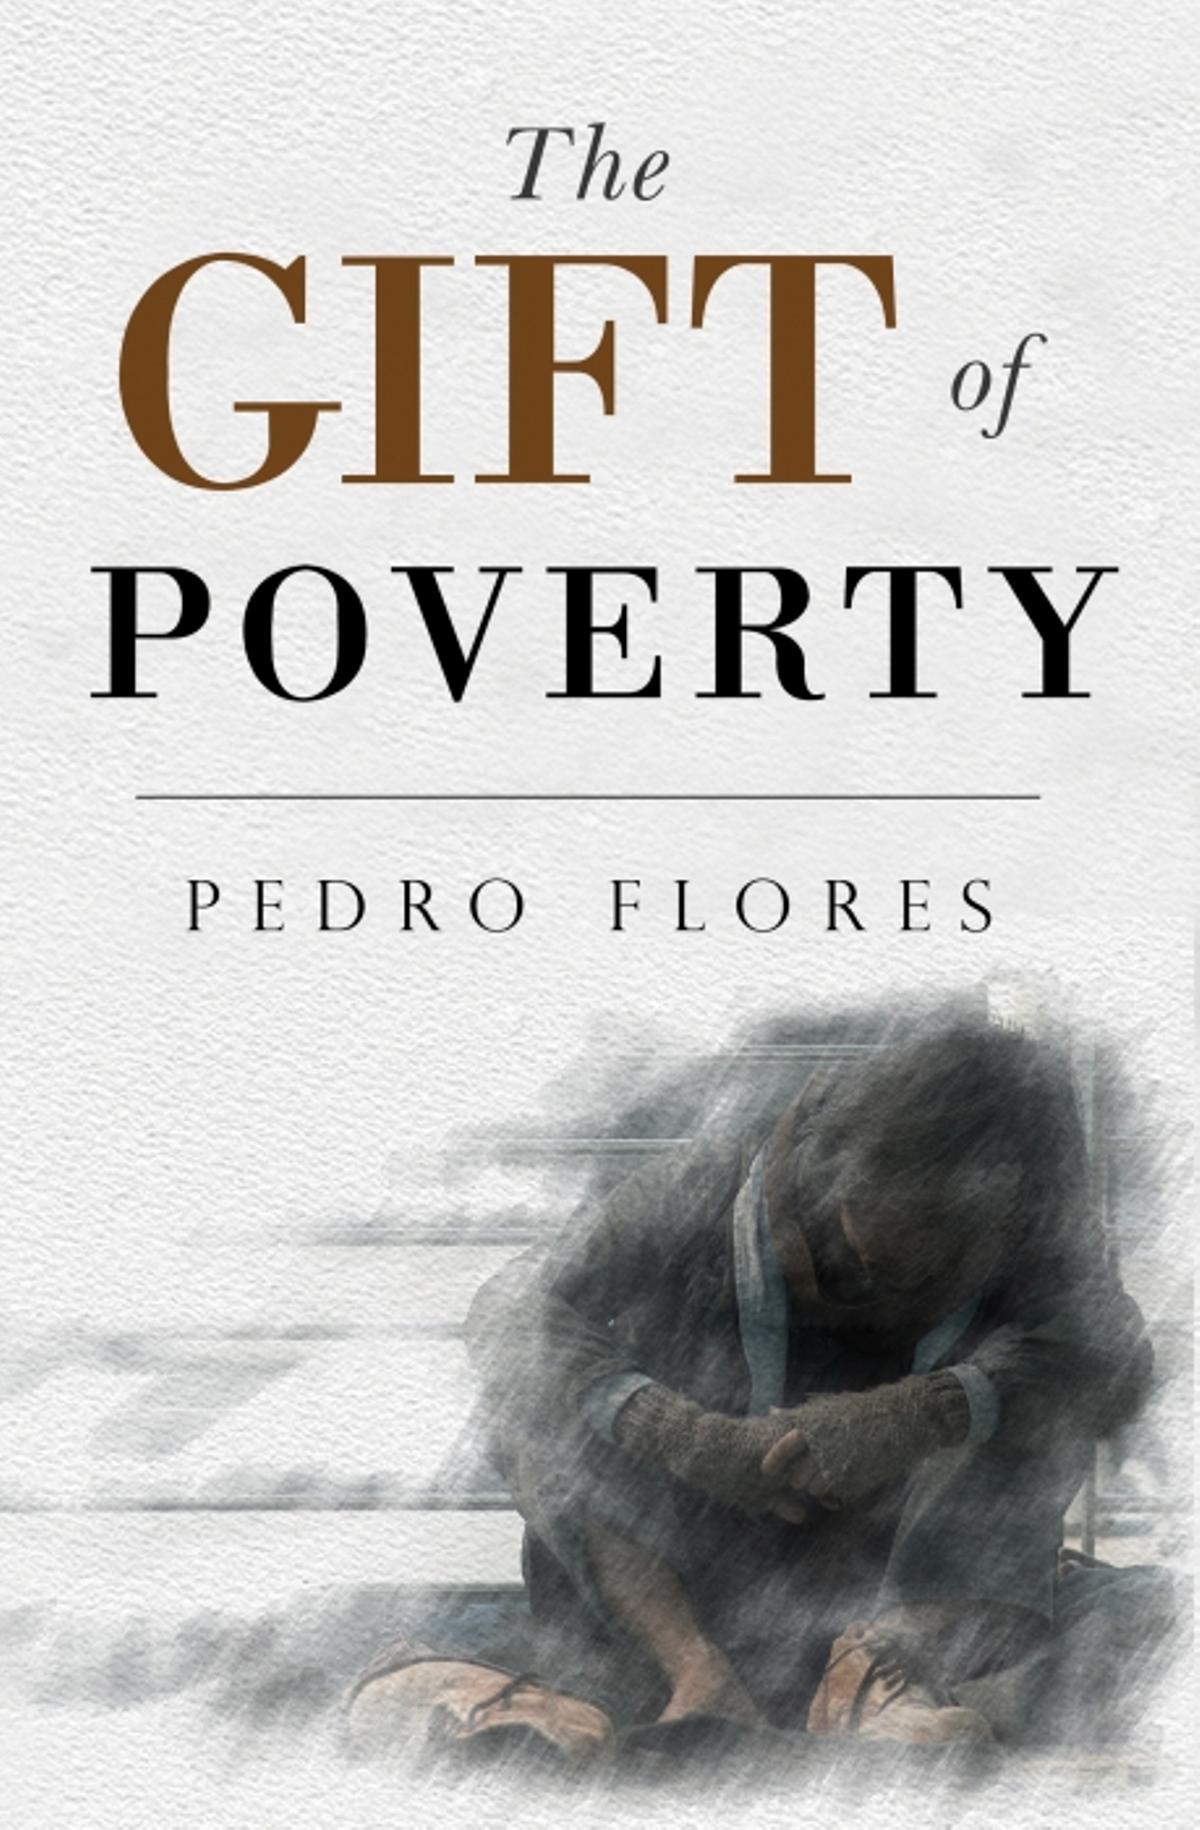 Cubierta del libro de Pedro Flores, 'El don de la pobreza', traducido al inglés por Margaret Hart.